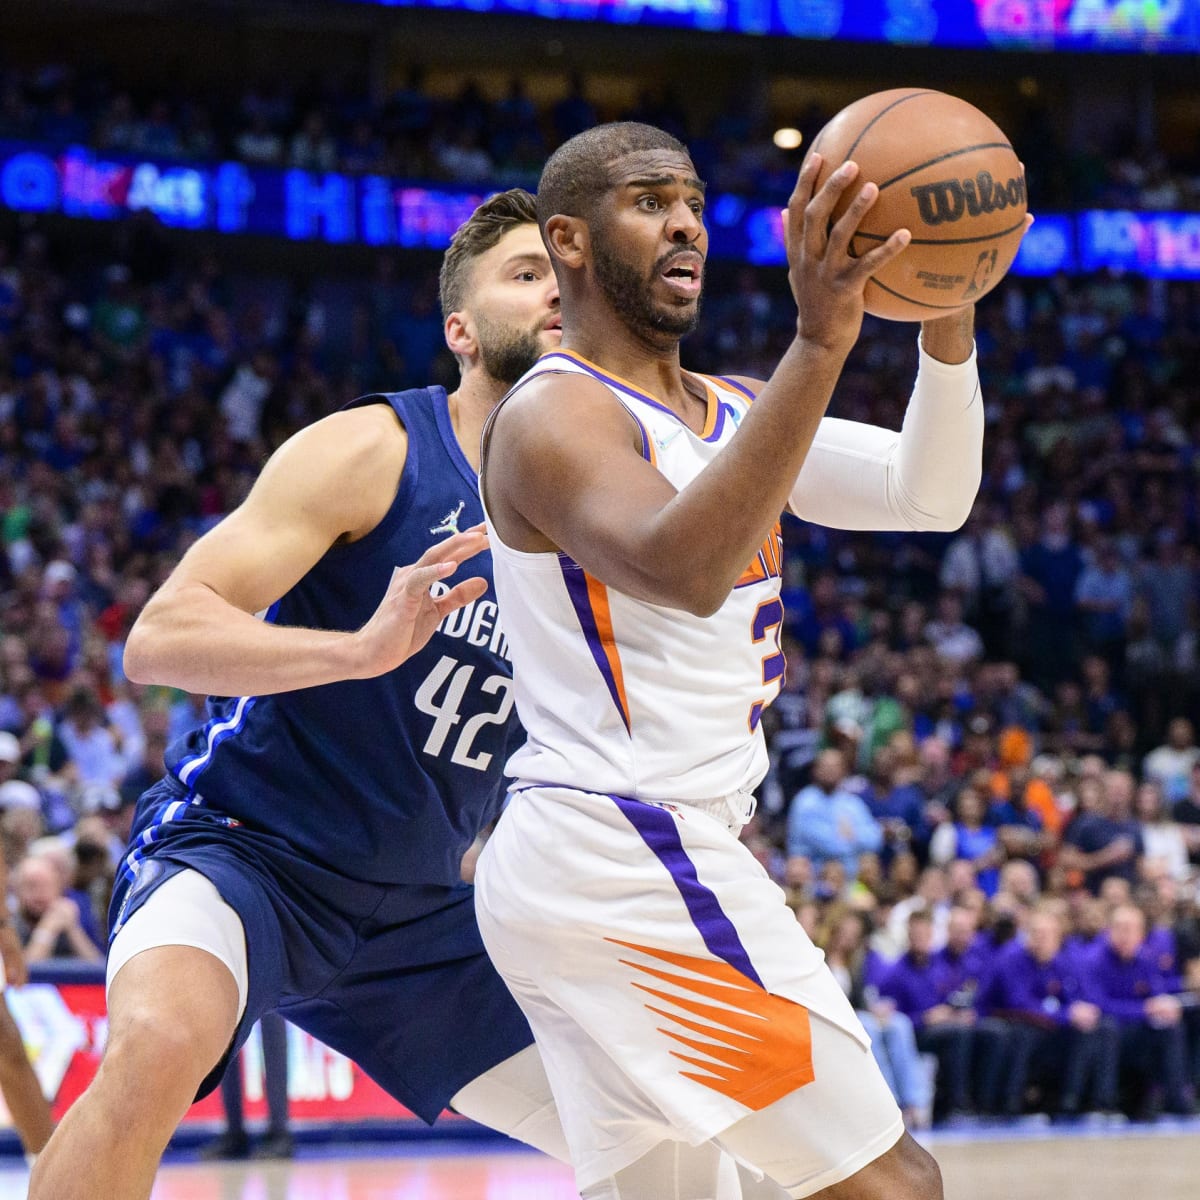 Dallas Mavericks' victory sets up winner-take-all Game 7 at Suns